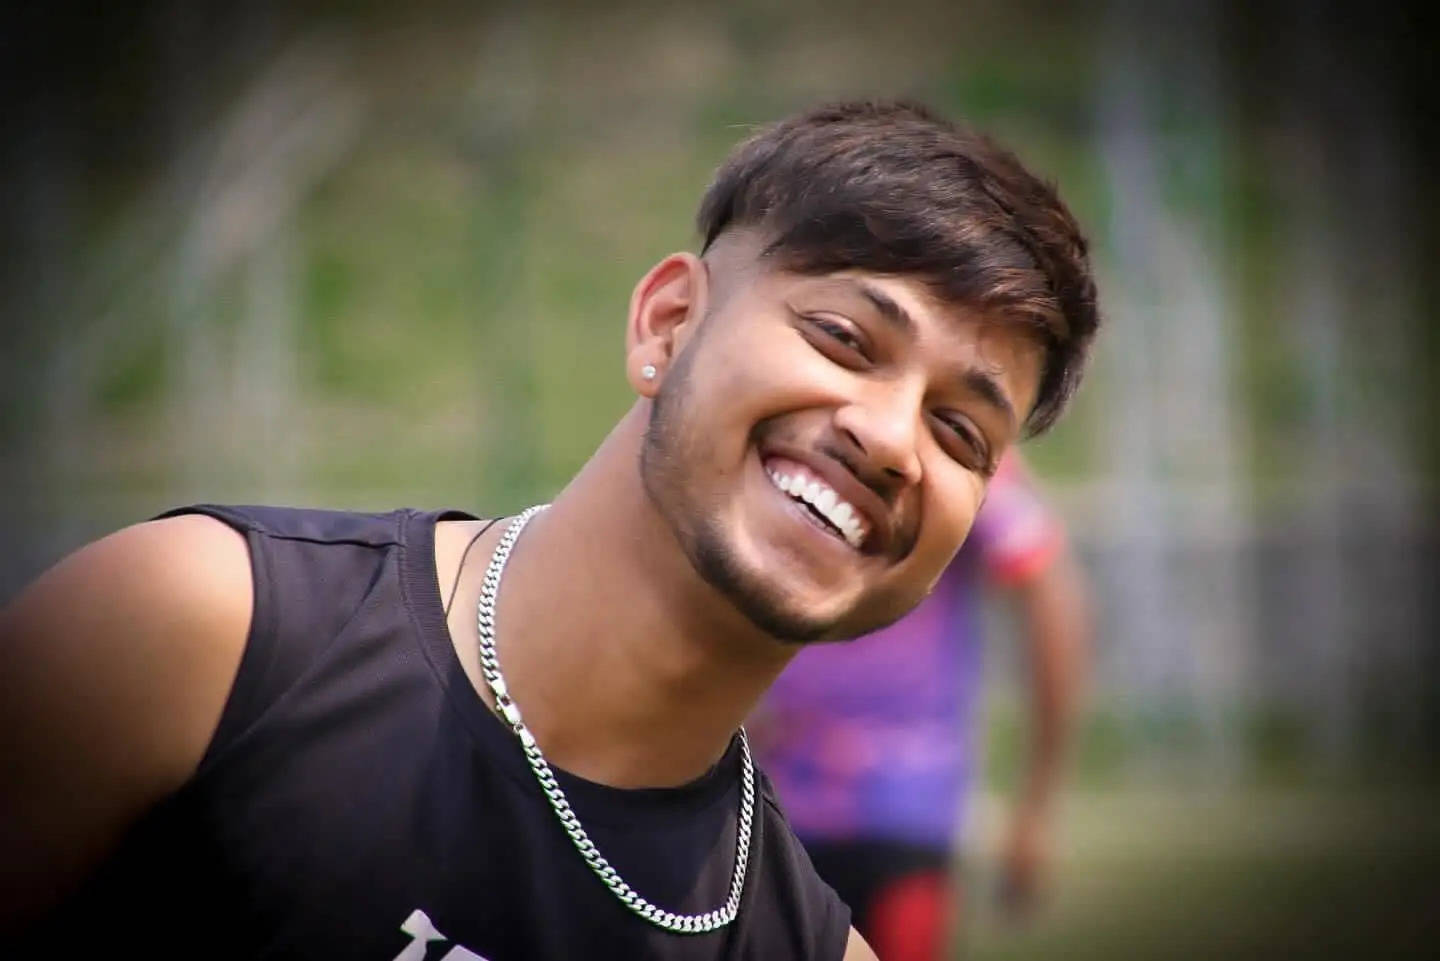 नेपाली क्रिकेट टीम के पूर्व कप्तान दुष्कर्म मामले में दोषी करार